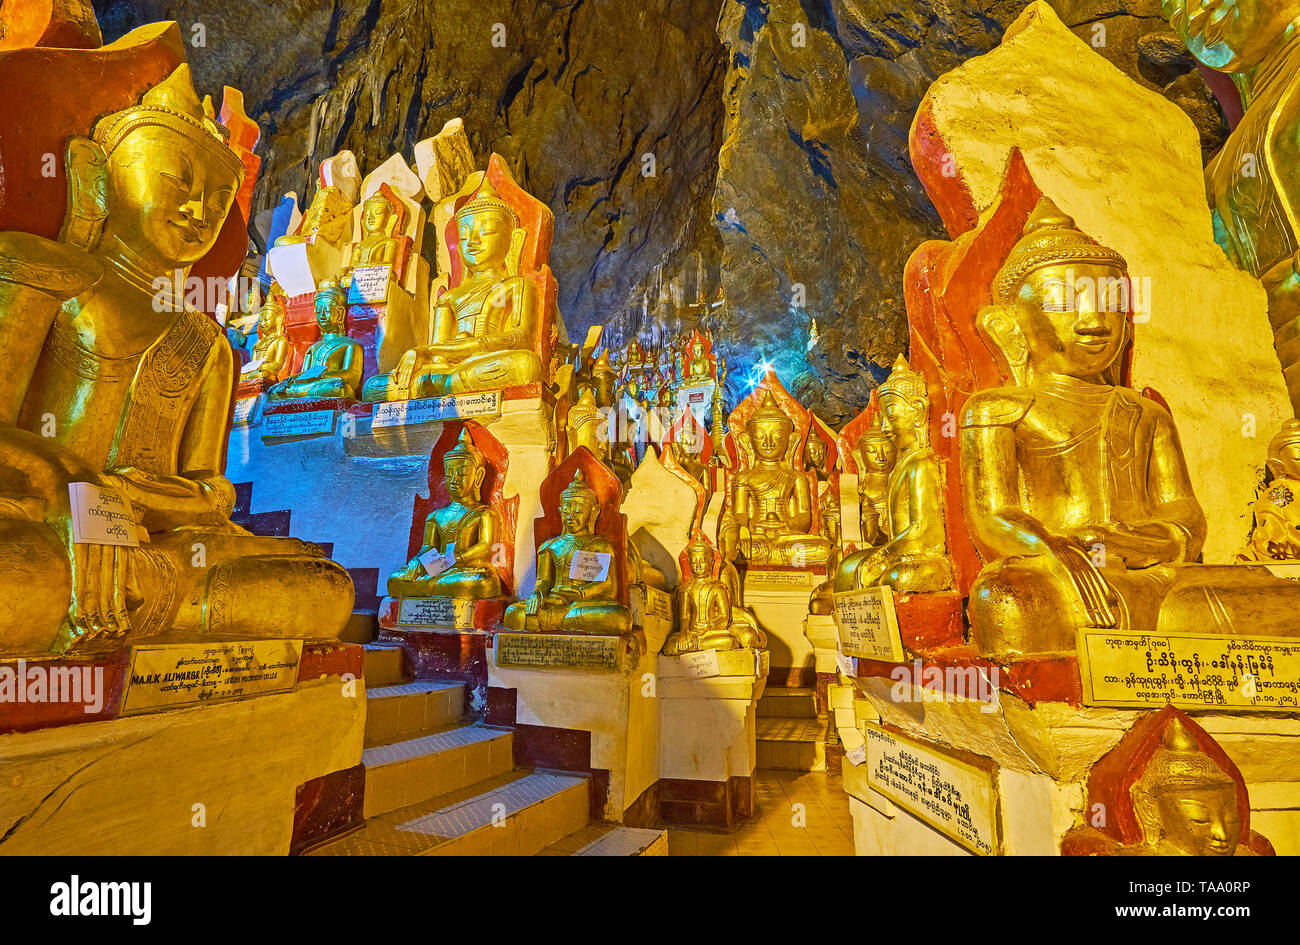 PINDAYA, MYANMAR - 19 febbraio 2018: sentire l'atmosfera del centro storico di Pindaya grotta complessa, godere del suo silenzio e solitudine e la bellezza del Buddha d'oro Foto Stock